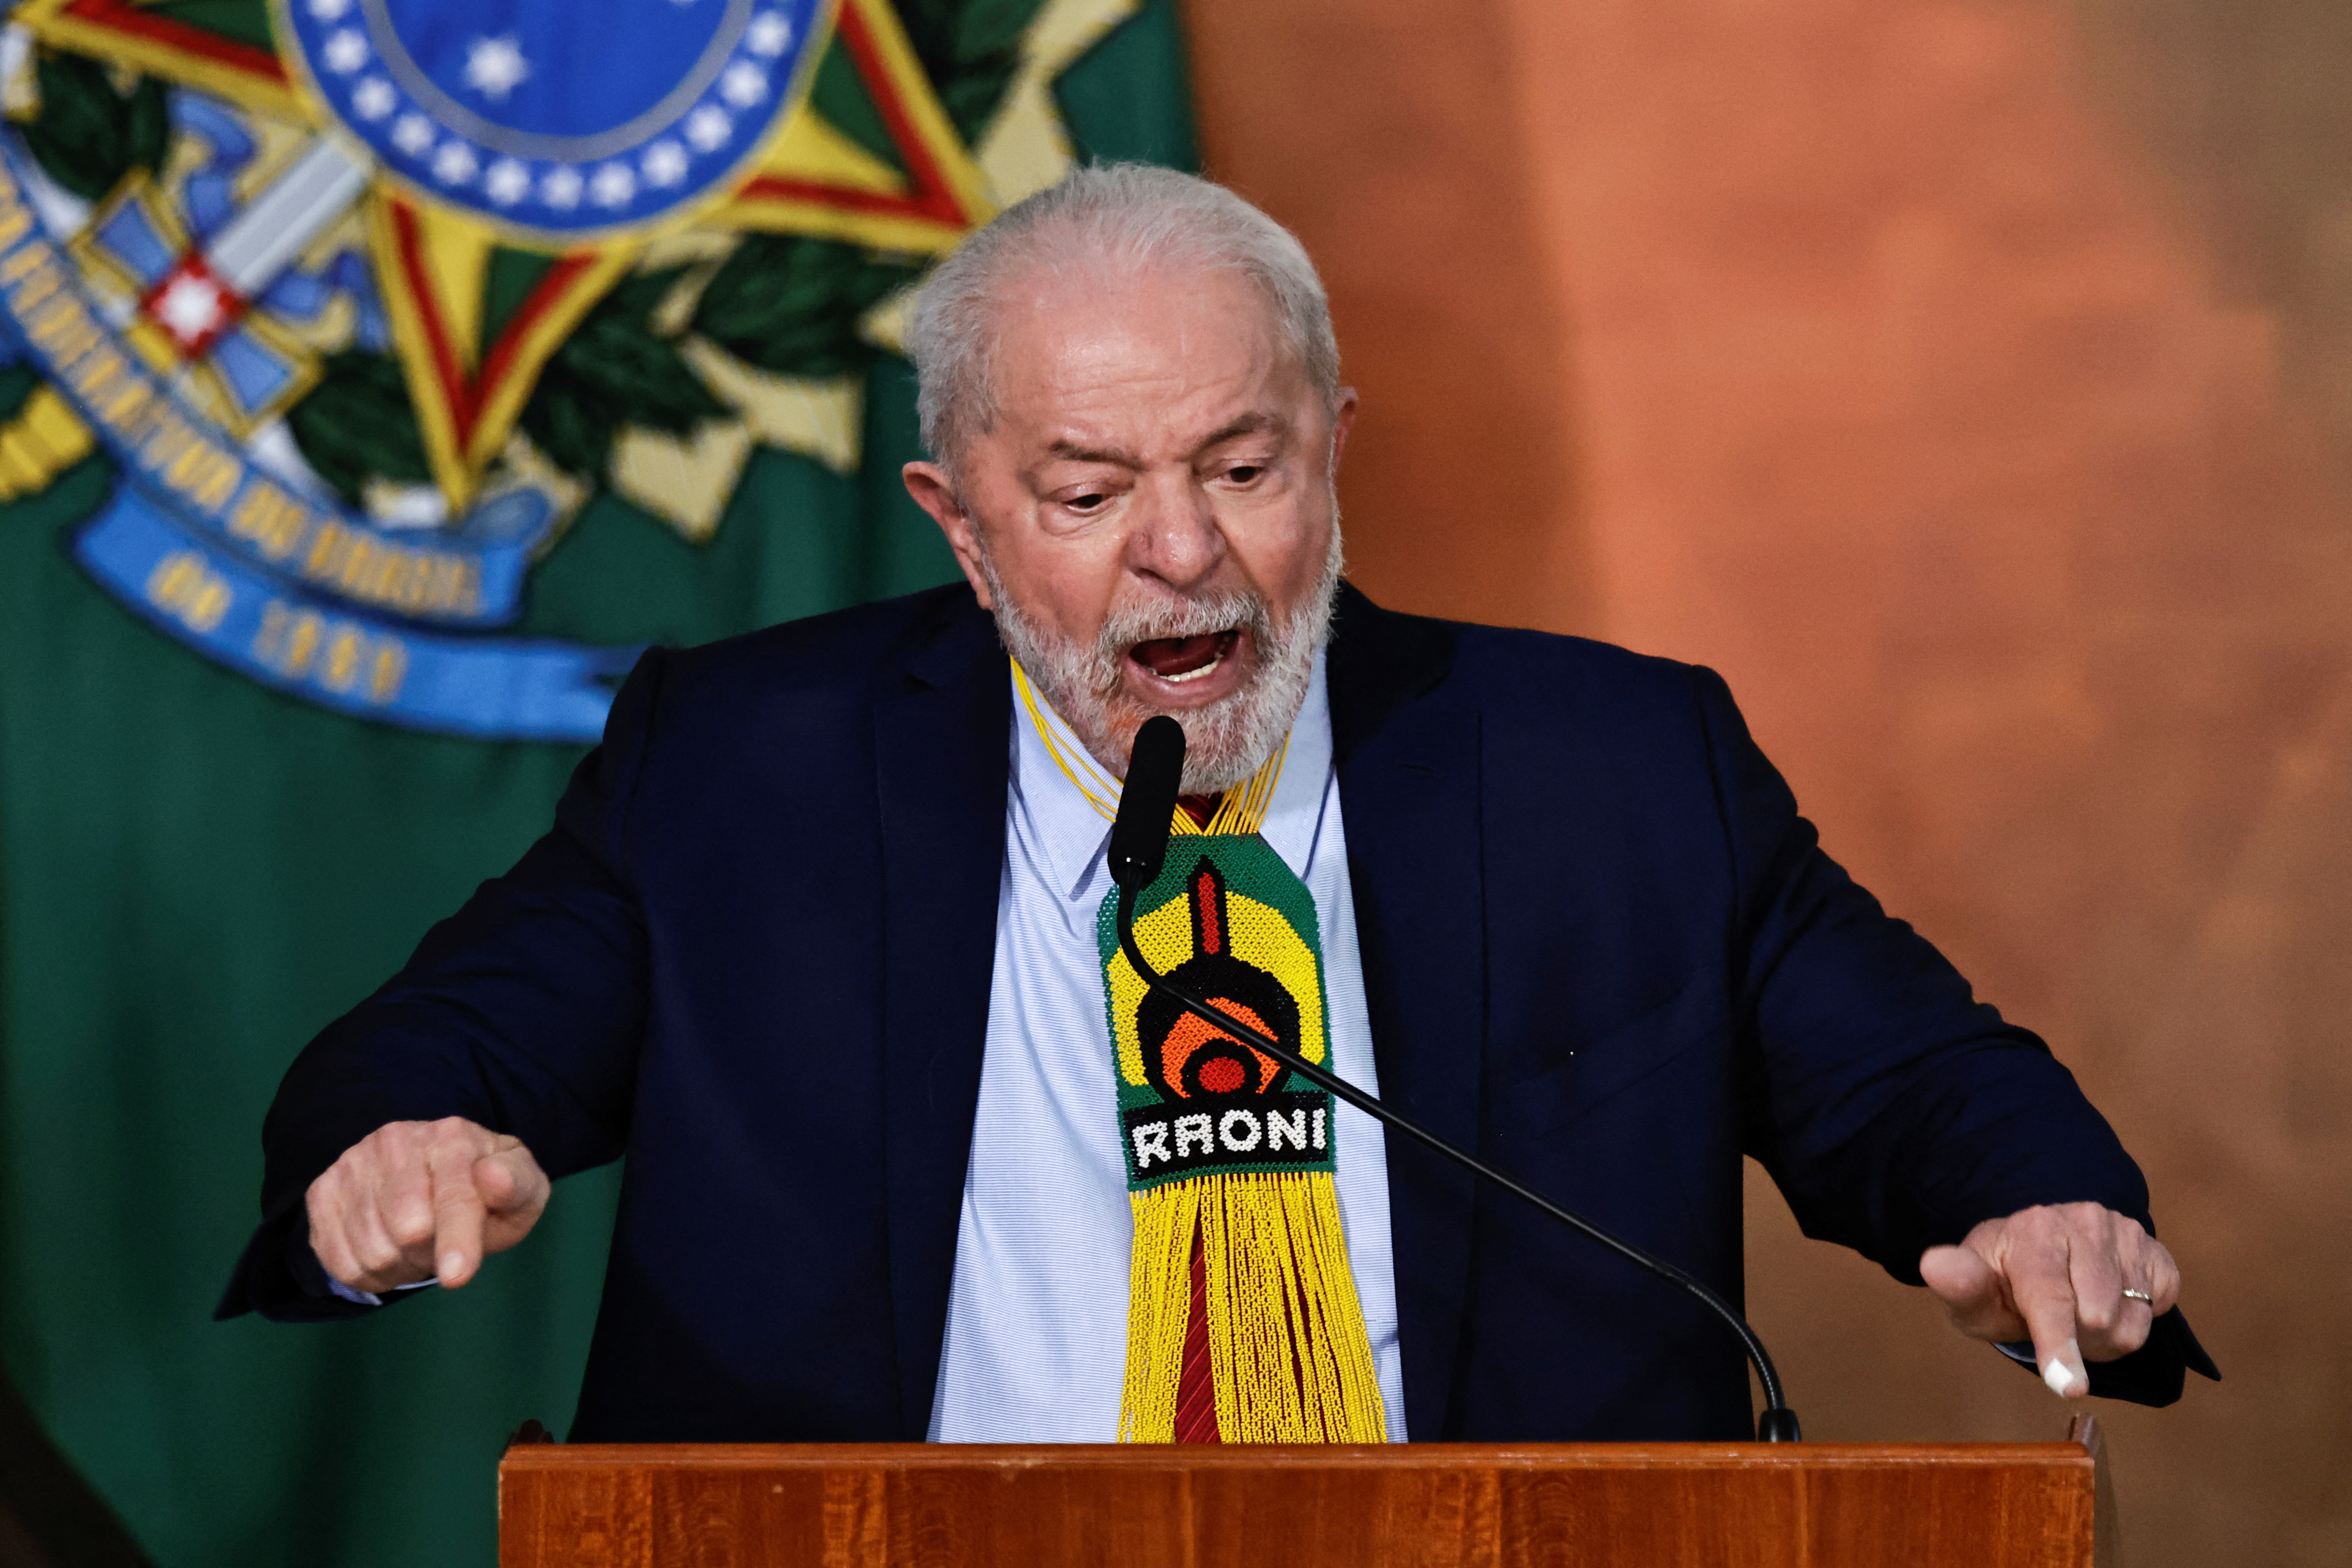 Cae la aprobación y sube la mala imagen del gobierno de Lula da Silva en Brasil